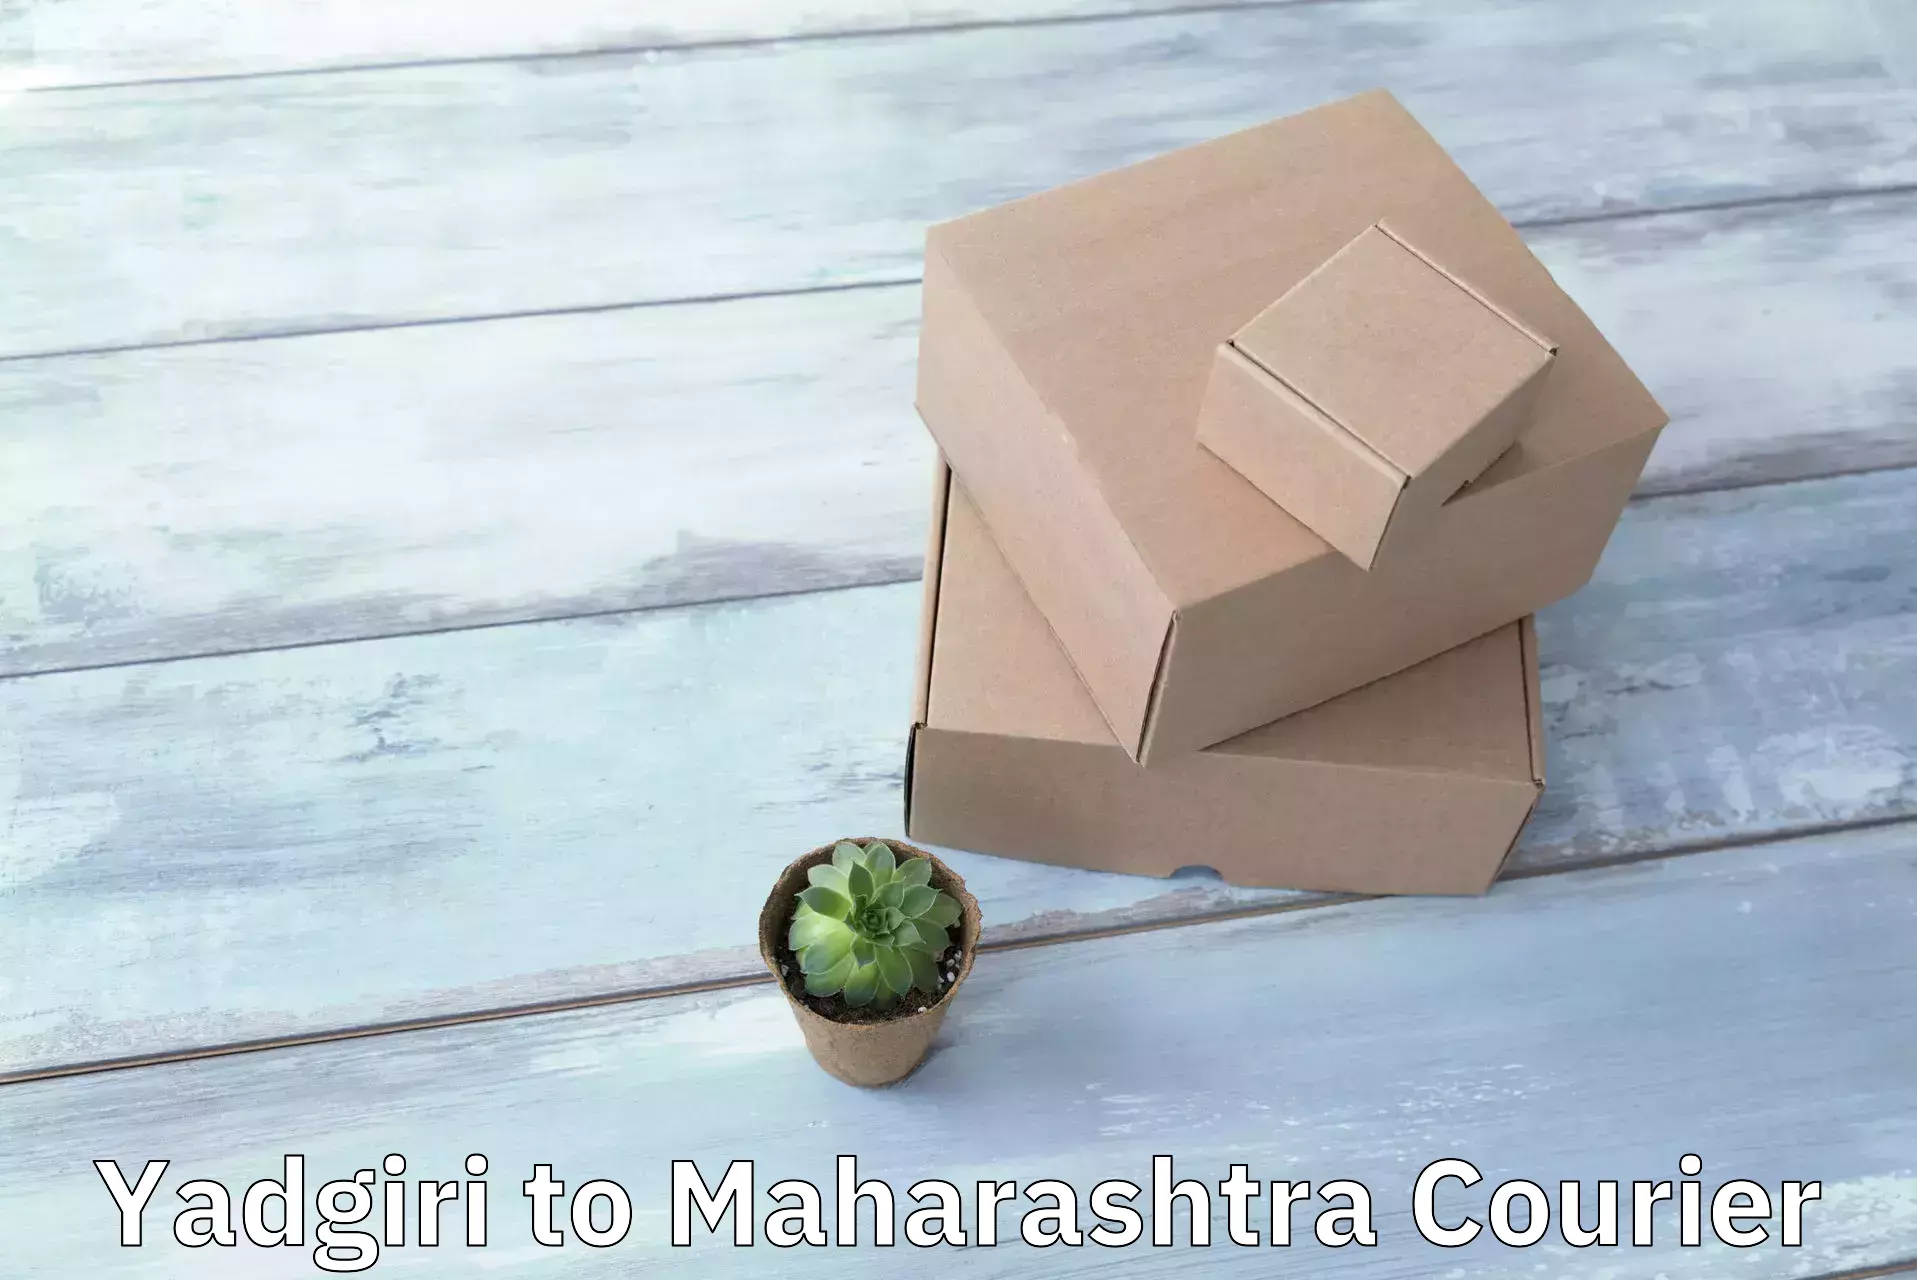 Customizable delivery plans Yadgiri to Sironcha